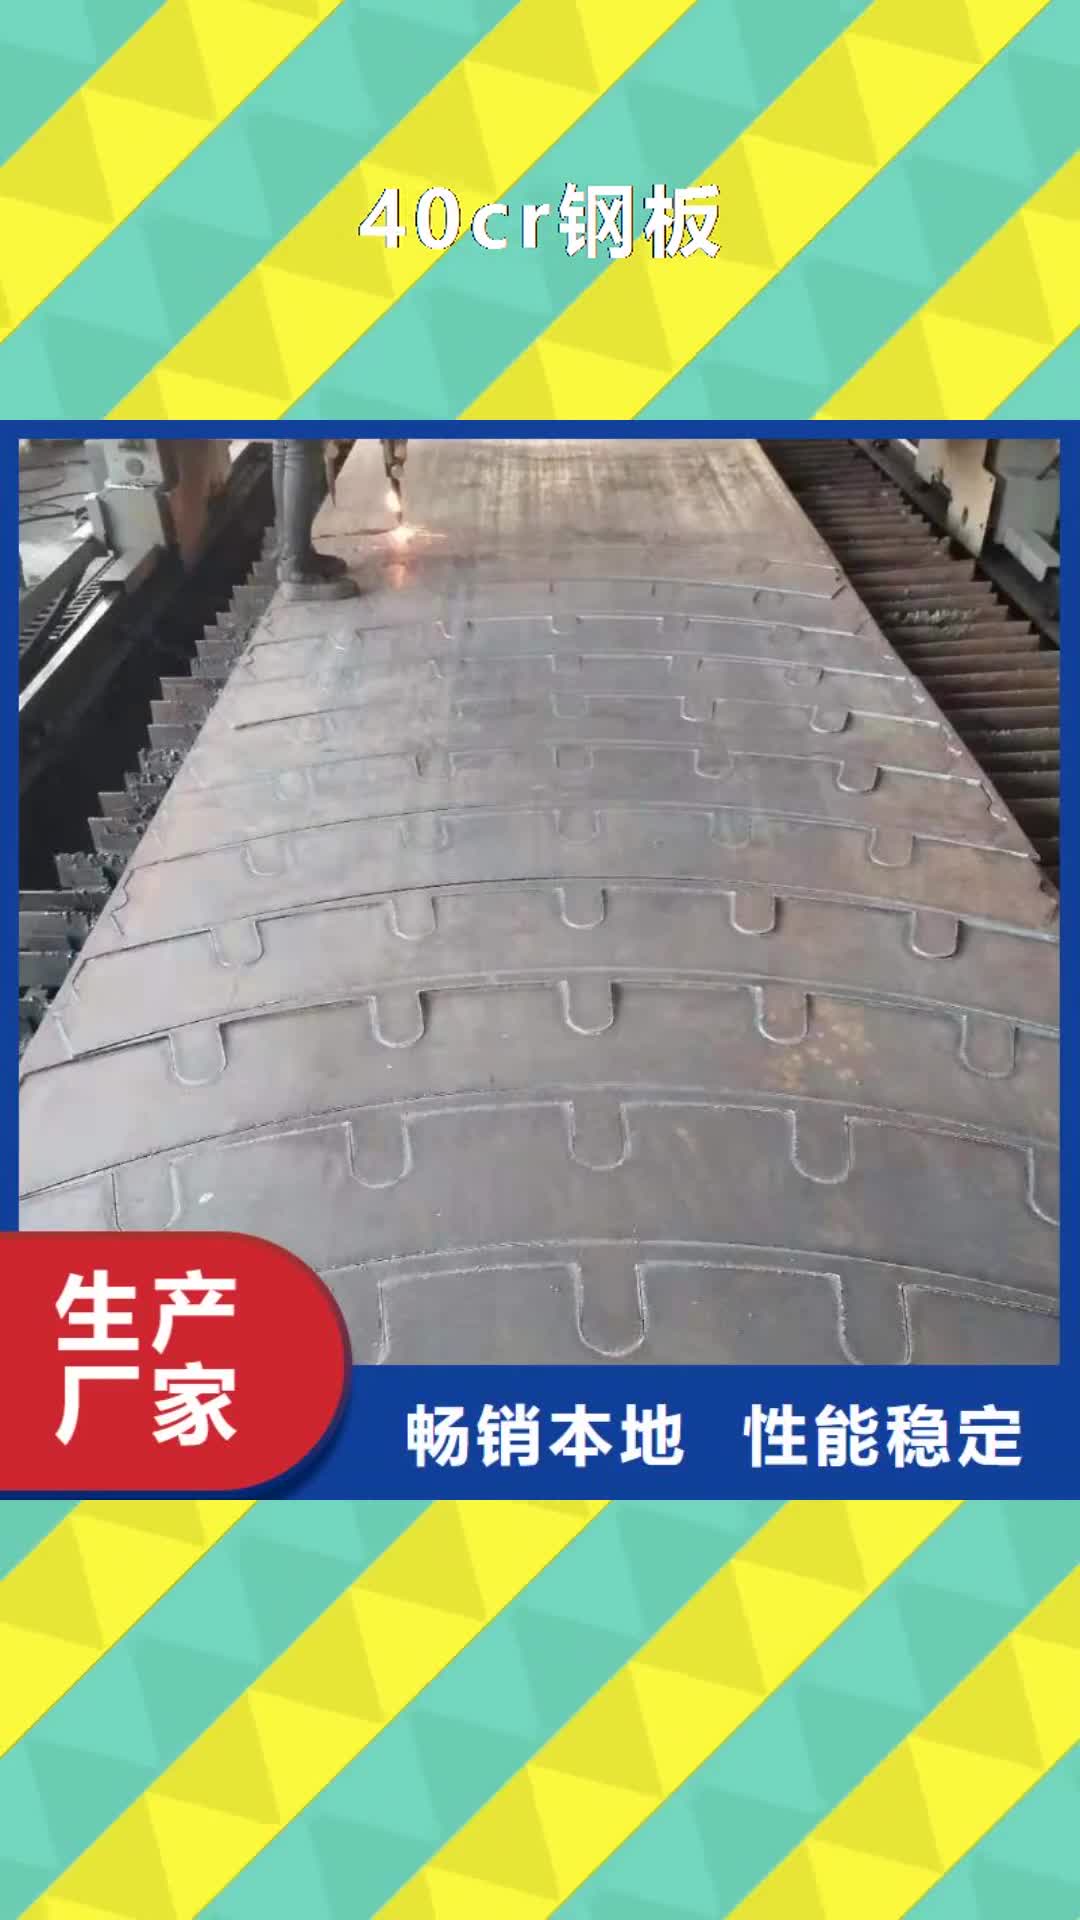 郑州 40cr钢板【40#钢板】精选优质材料